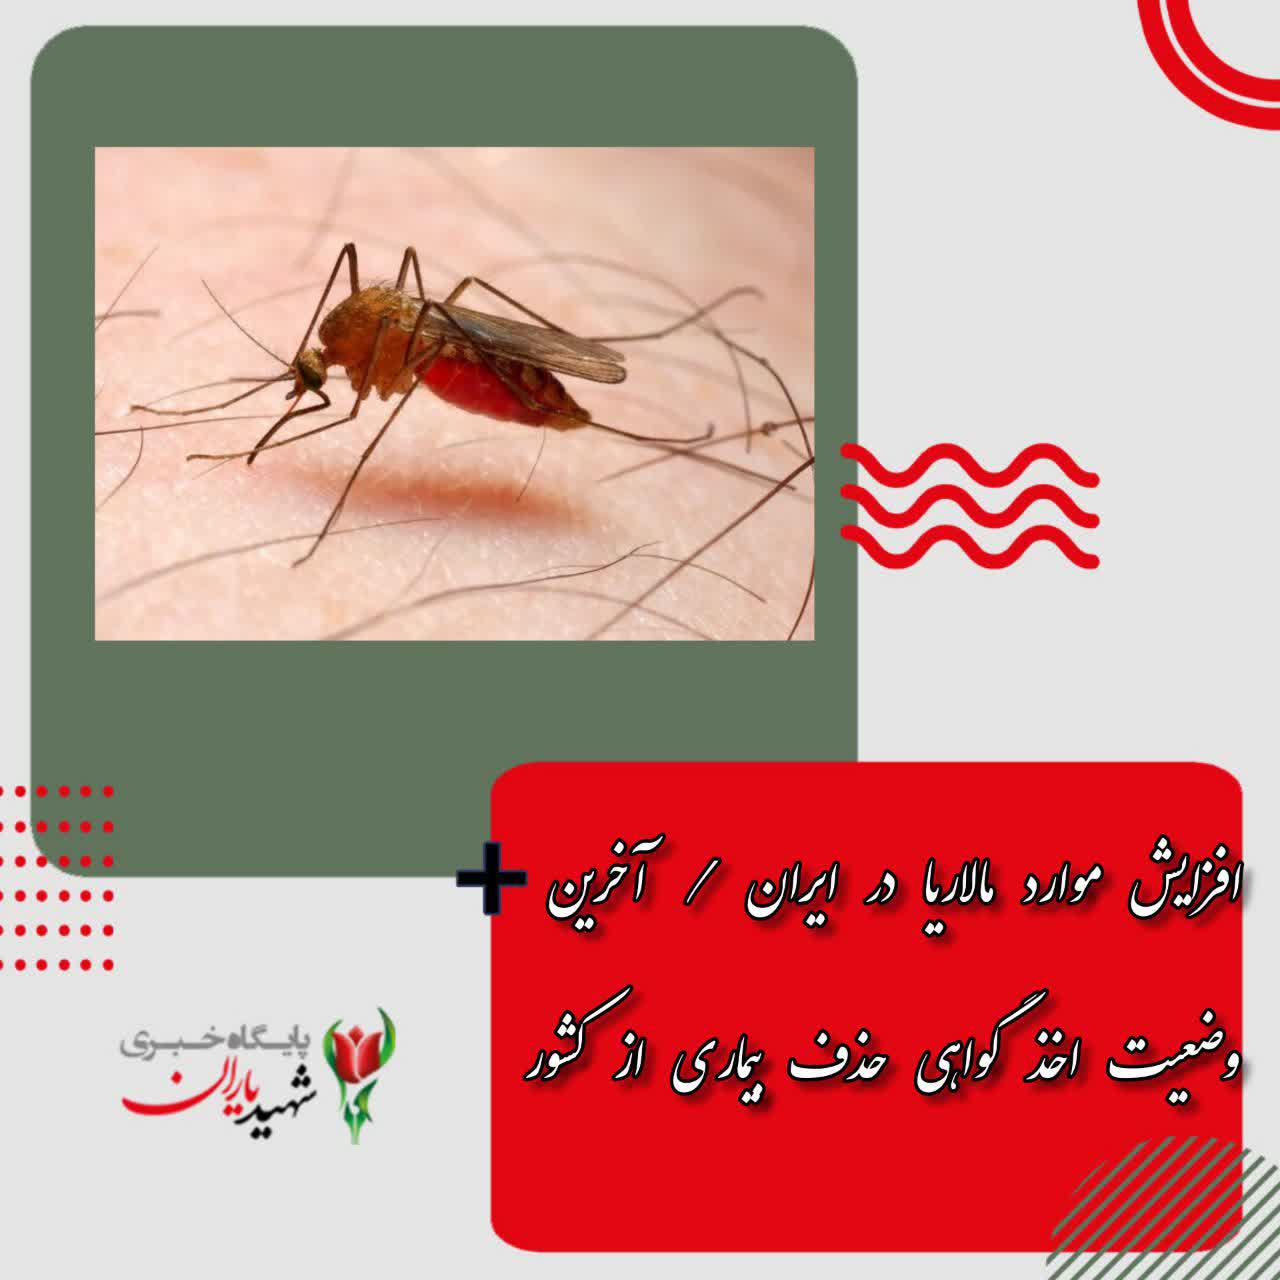 افزایش موارد مالاریا در ایران / آخرین وضعیت اخذ گواهی حذف بیماری از کشور